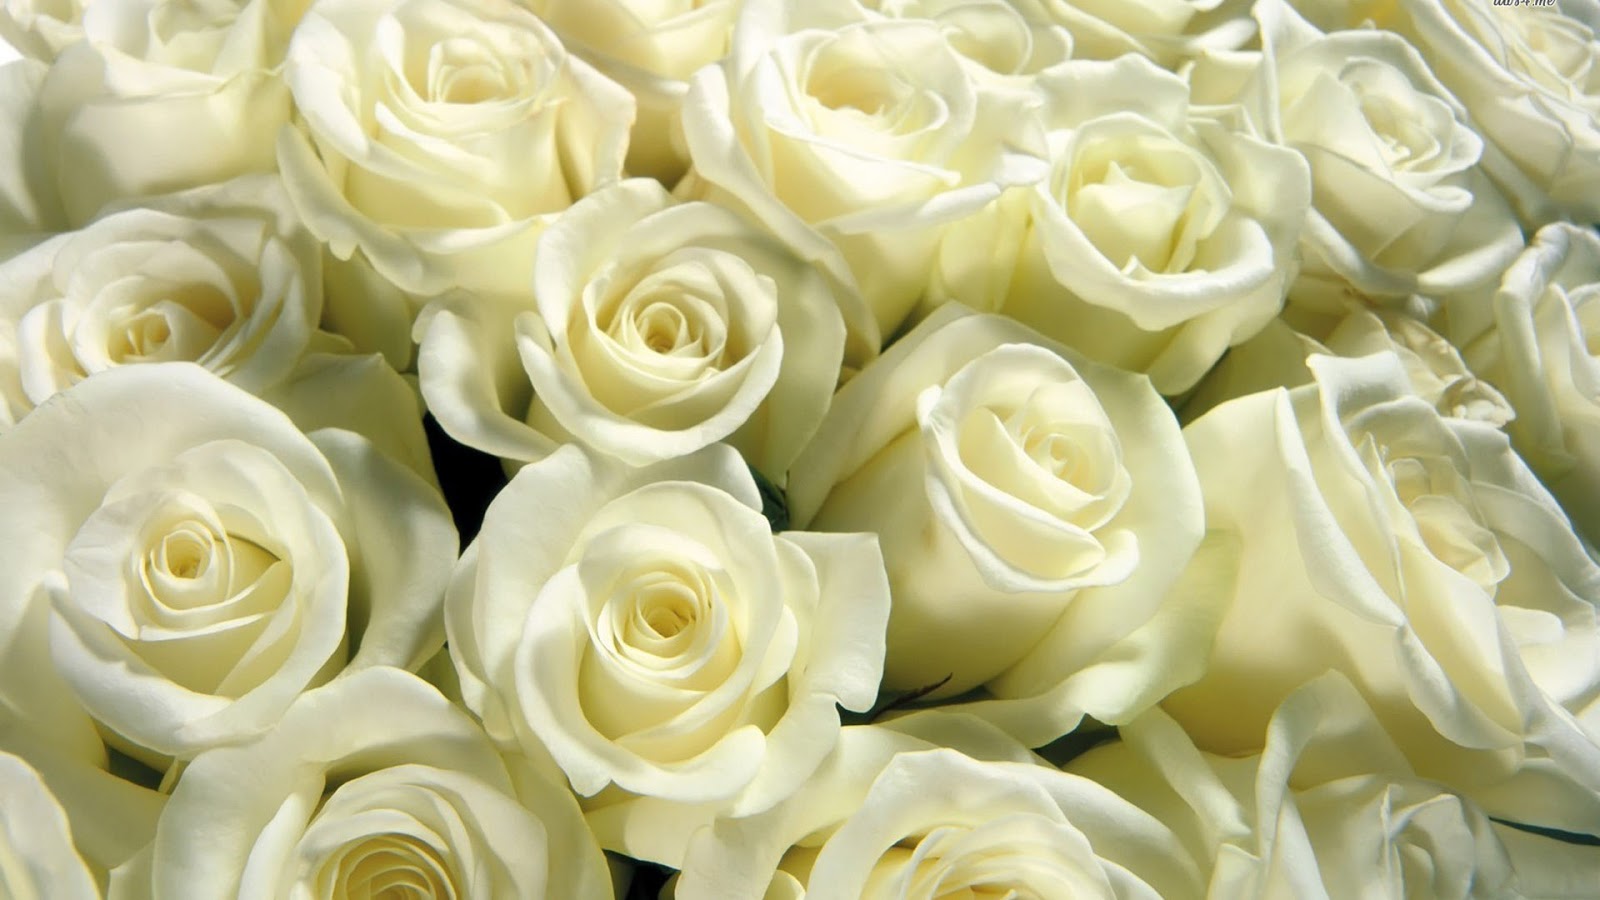 tặng hoa hồng ngày 20/10 đối với bạn gái mới quen, các chàng trai nên lựa chọn những bó hoa hồng trắng để thể hiện một cách tinh tế tình cảm cả mình